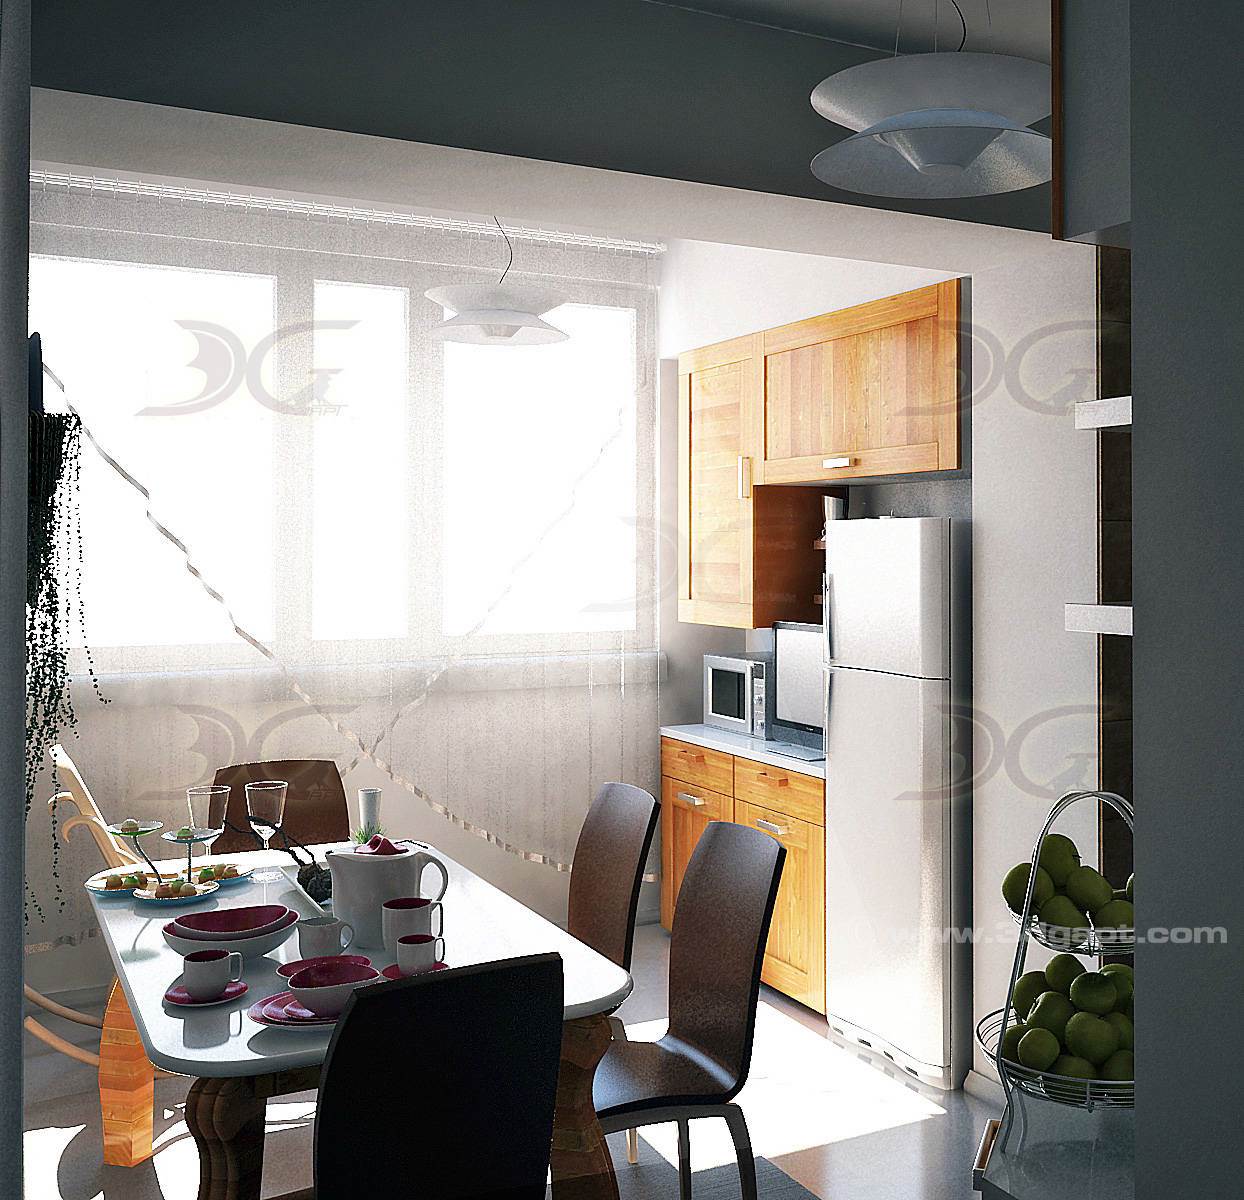 architecture interior kitchen-3versions 6